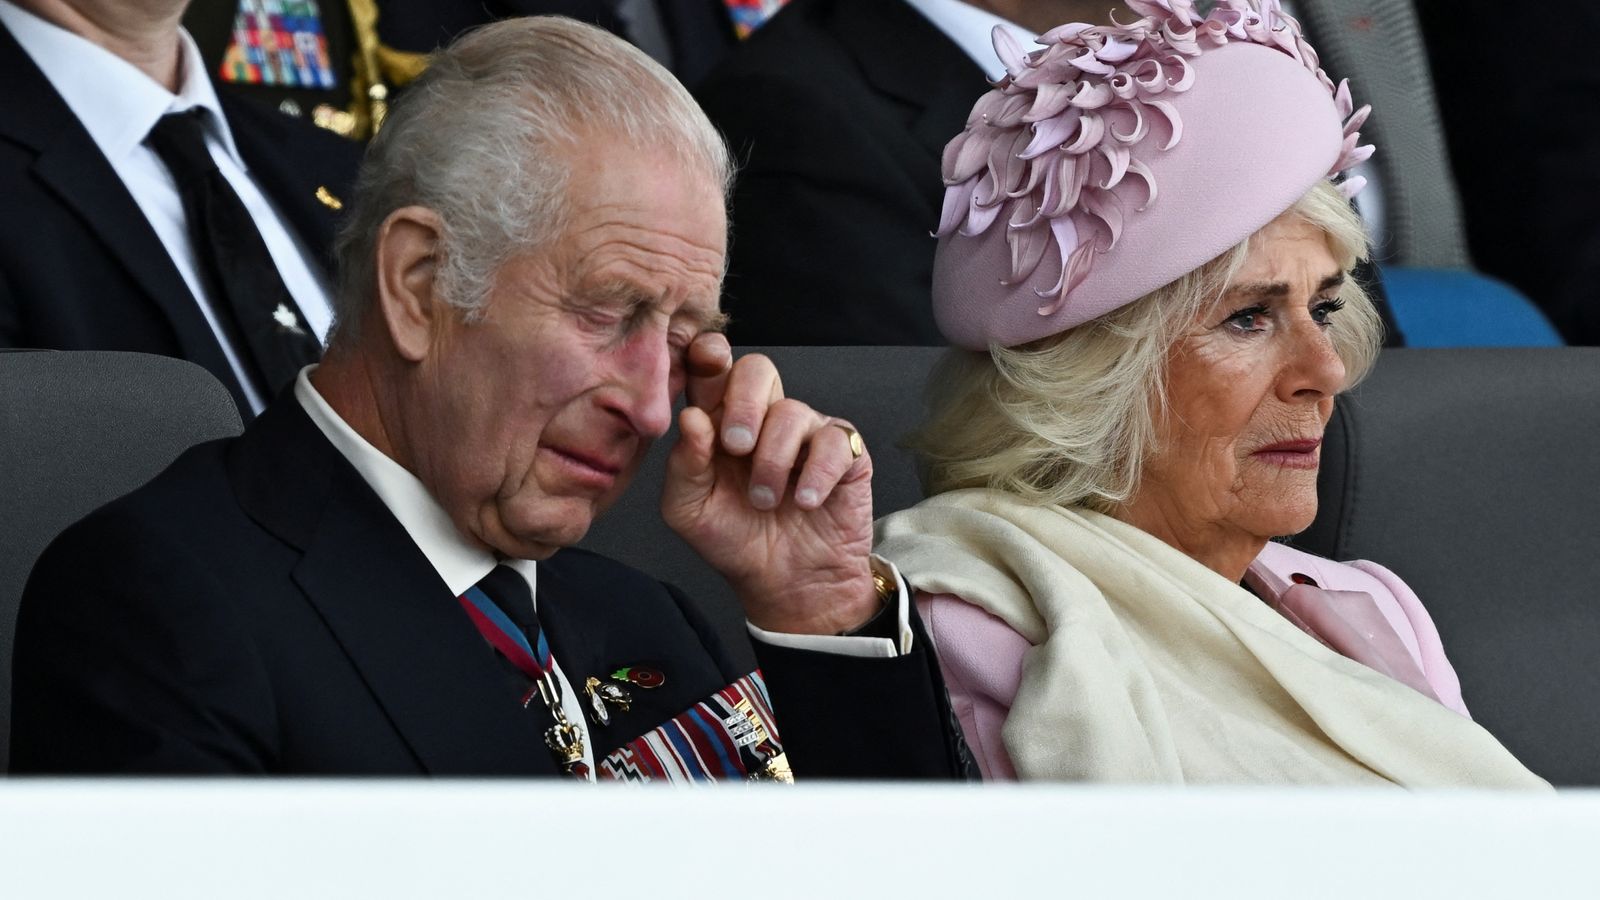 Кралят и кралицата изглеждат емоционални на фона на почит към „смелостта“ на ветераните от Деня D